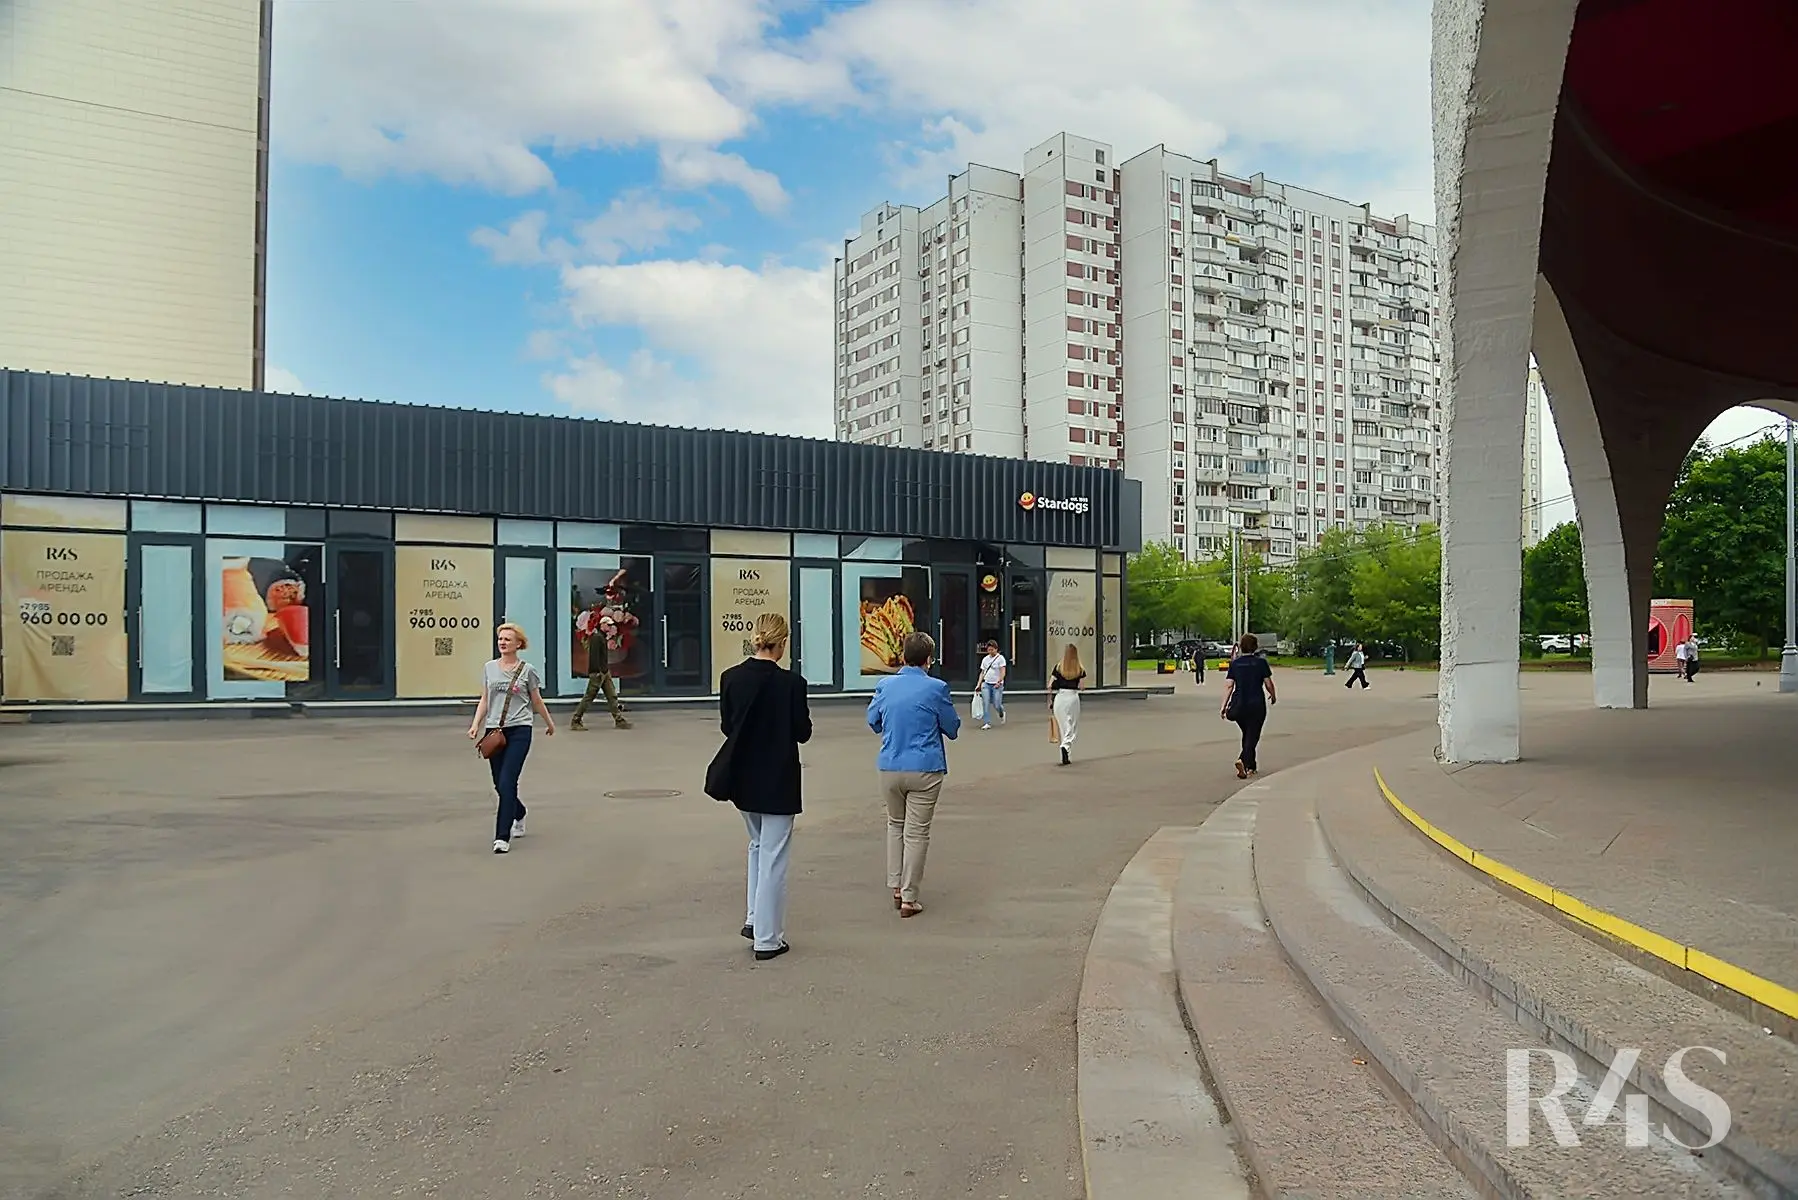 Аренда торговых помещений площадью 16.6 - 21 м2 в Москве:  Шипиловский проезд, 39к3 R4S | Realty4Sale